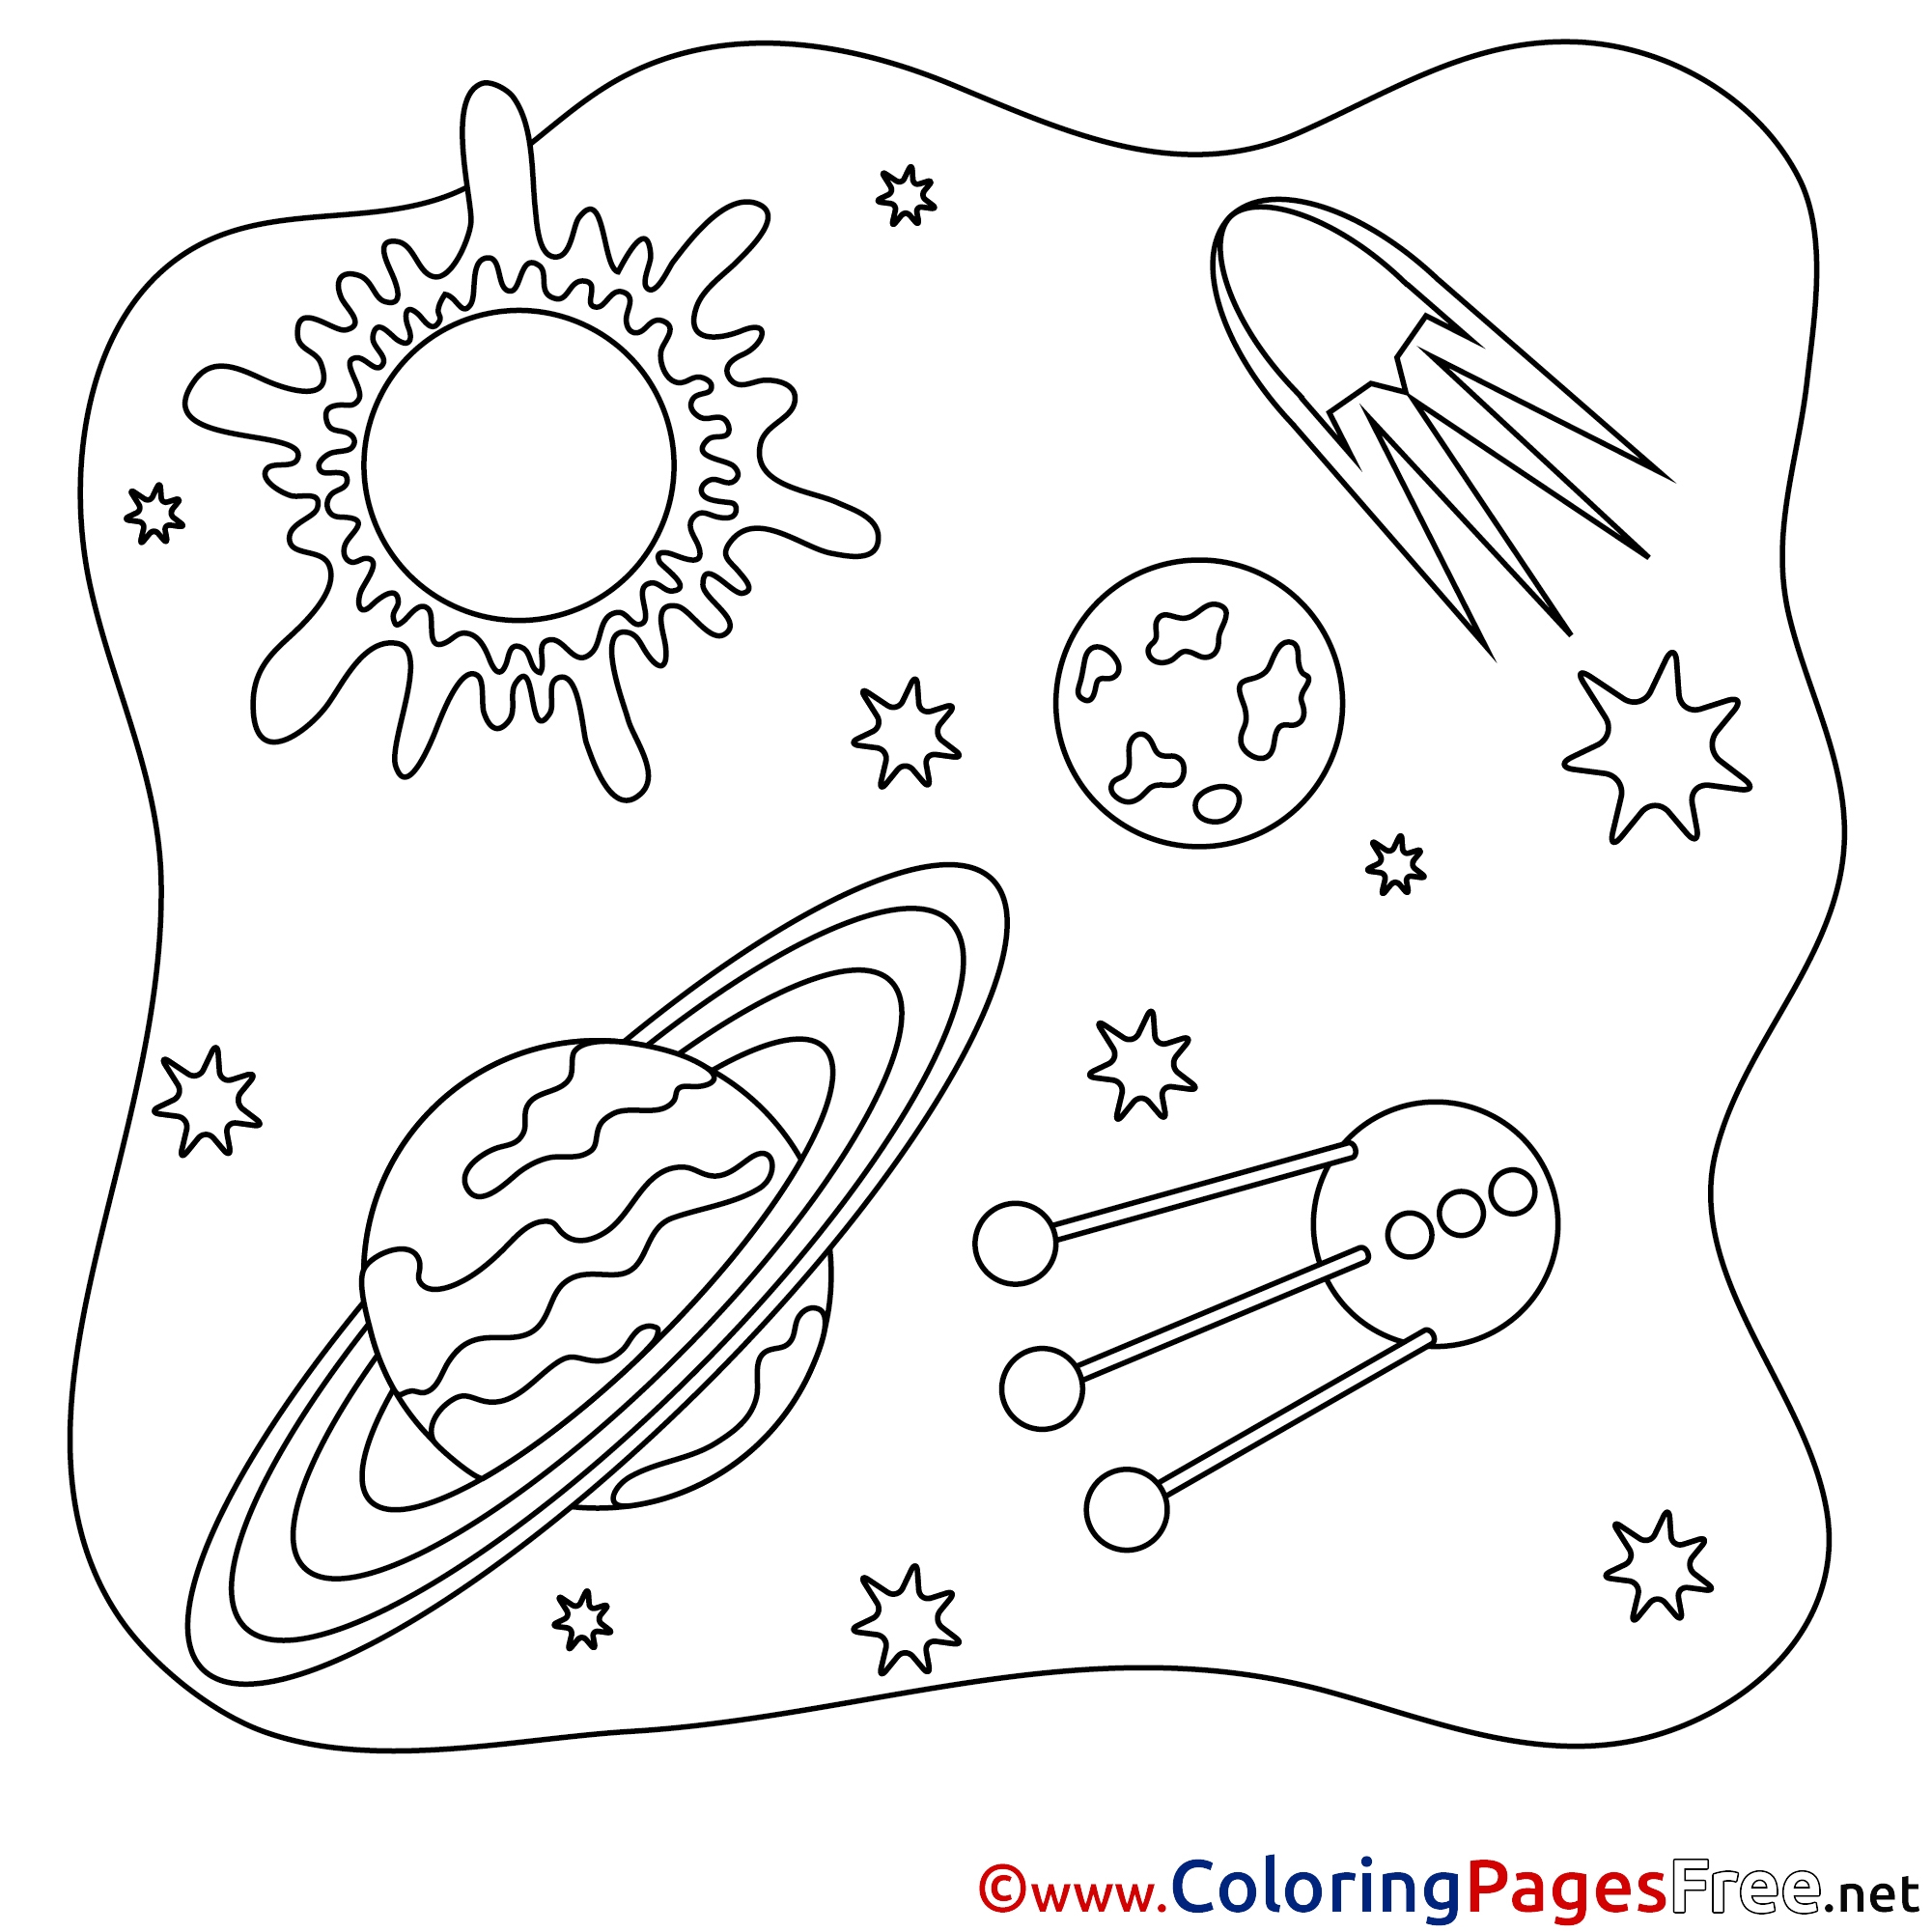 Космос раскраска для детей 3 4 лет. Космос раскраска для детей. Раскраска космос и планеты. Раскраска космос и планеты для детей. Раскраски космос для дошкольников.